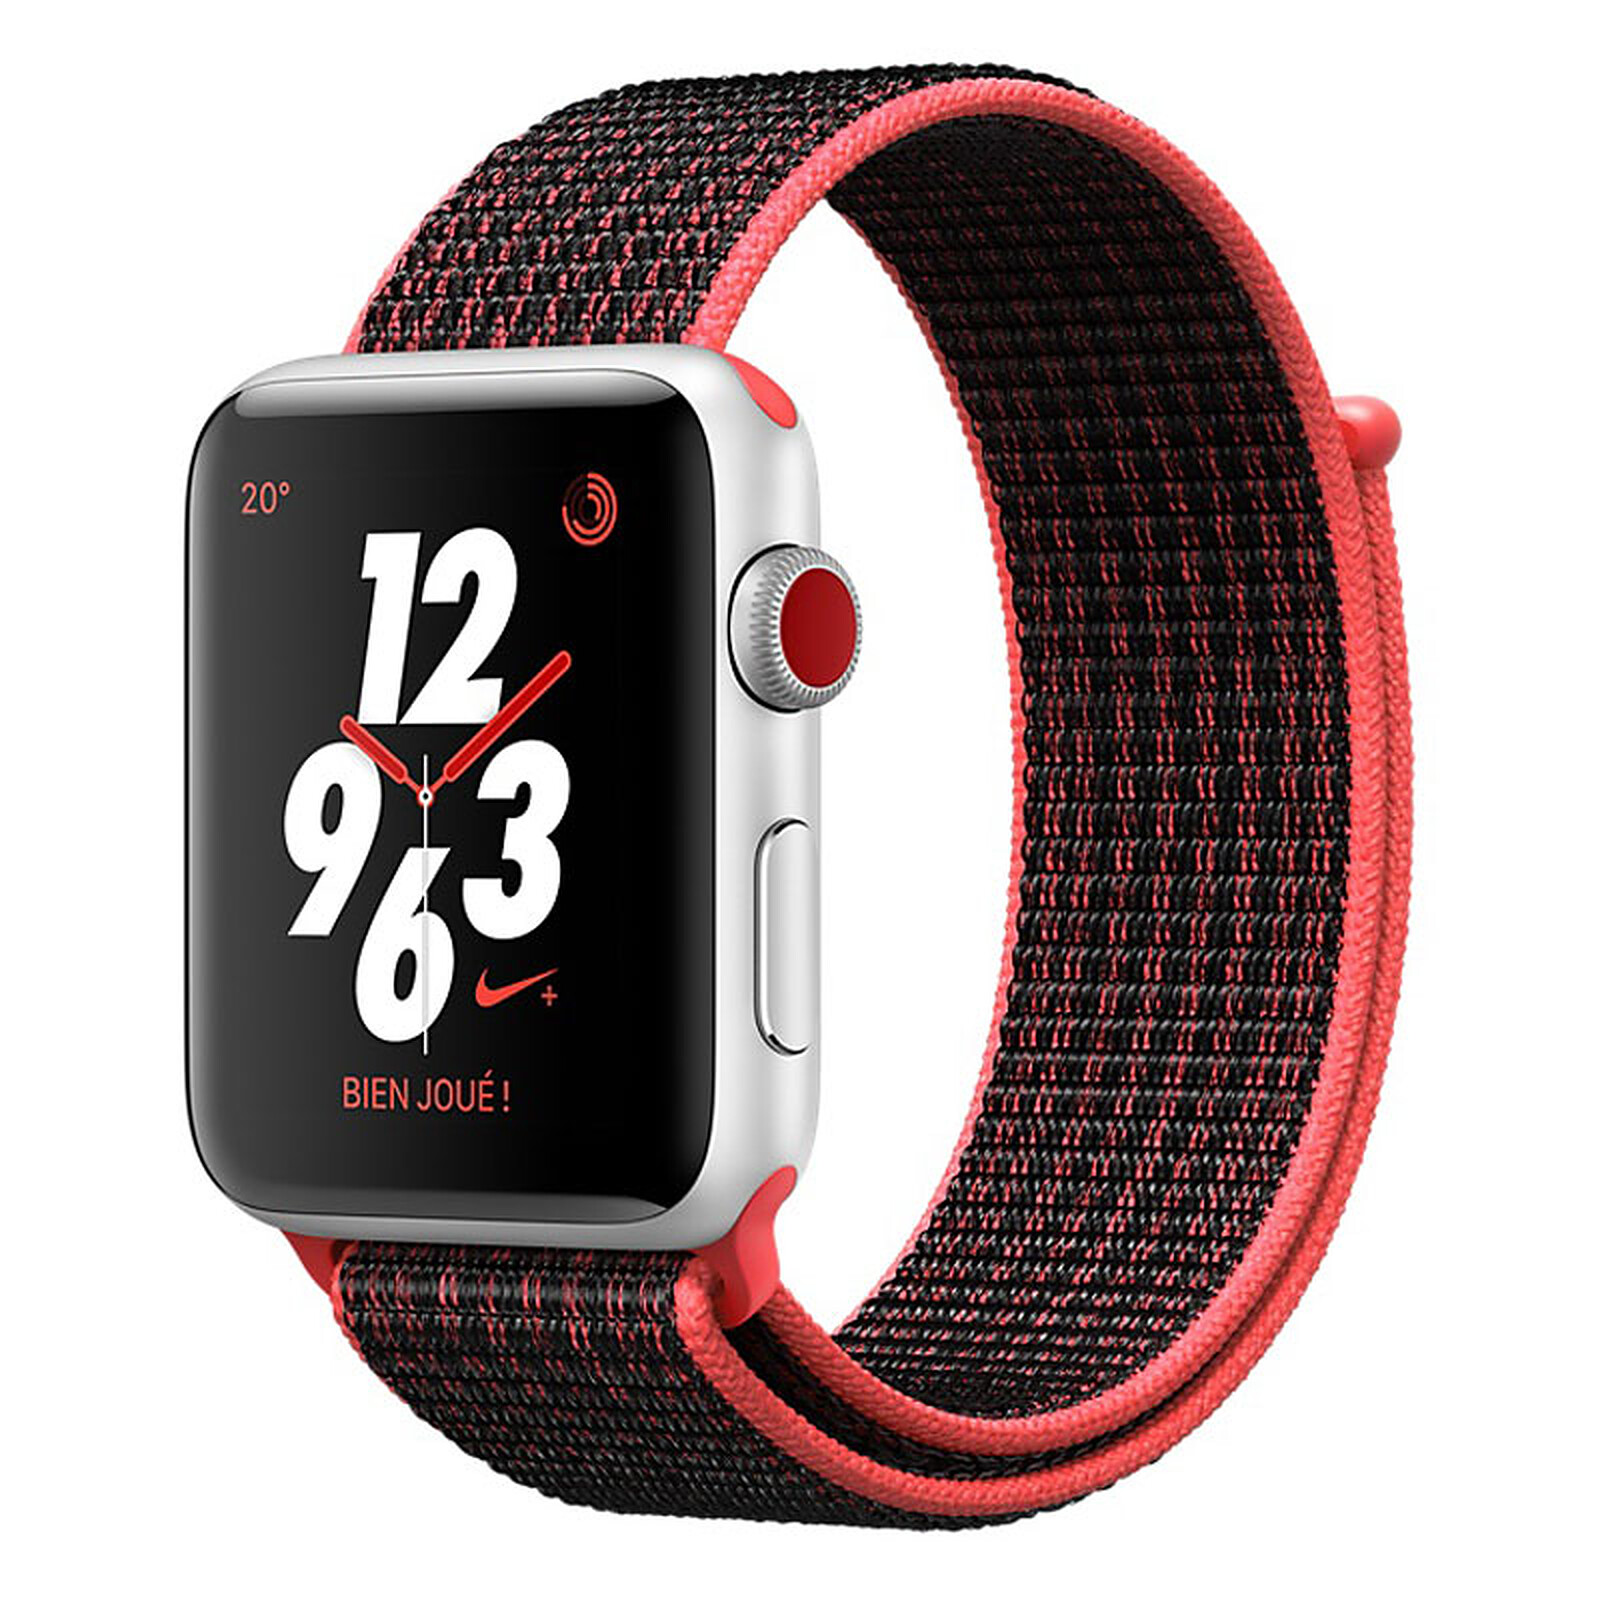 Distante todos los días amistad Apple Watch Nike+ Serie 3 GPS + Aluminio celular Silver Sport Crimson/Negro  38 mm - Smartwatch Apple en LDLC | ¡Musericordia!